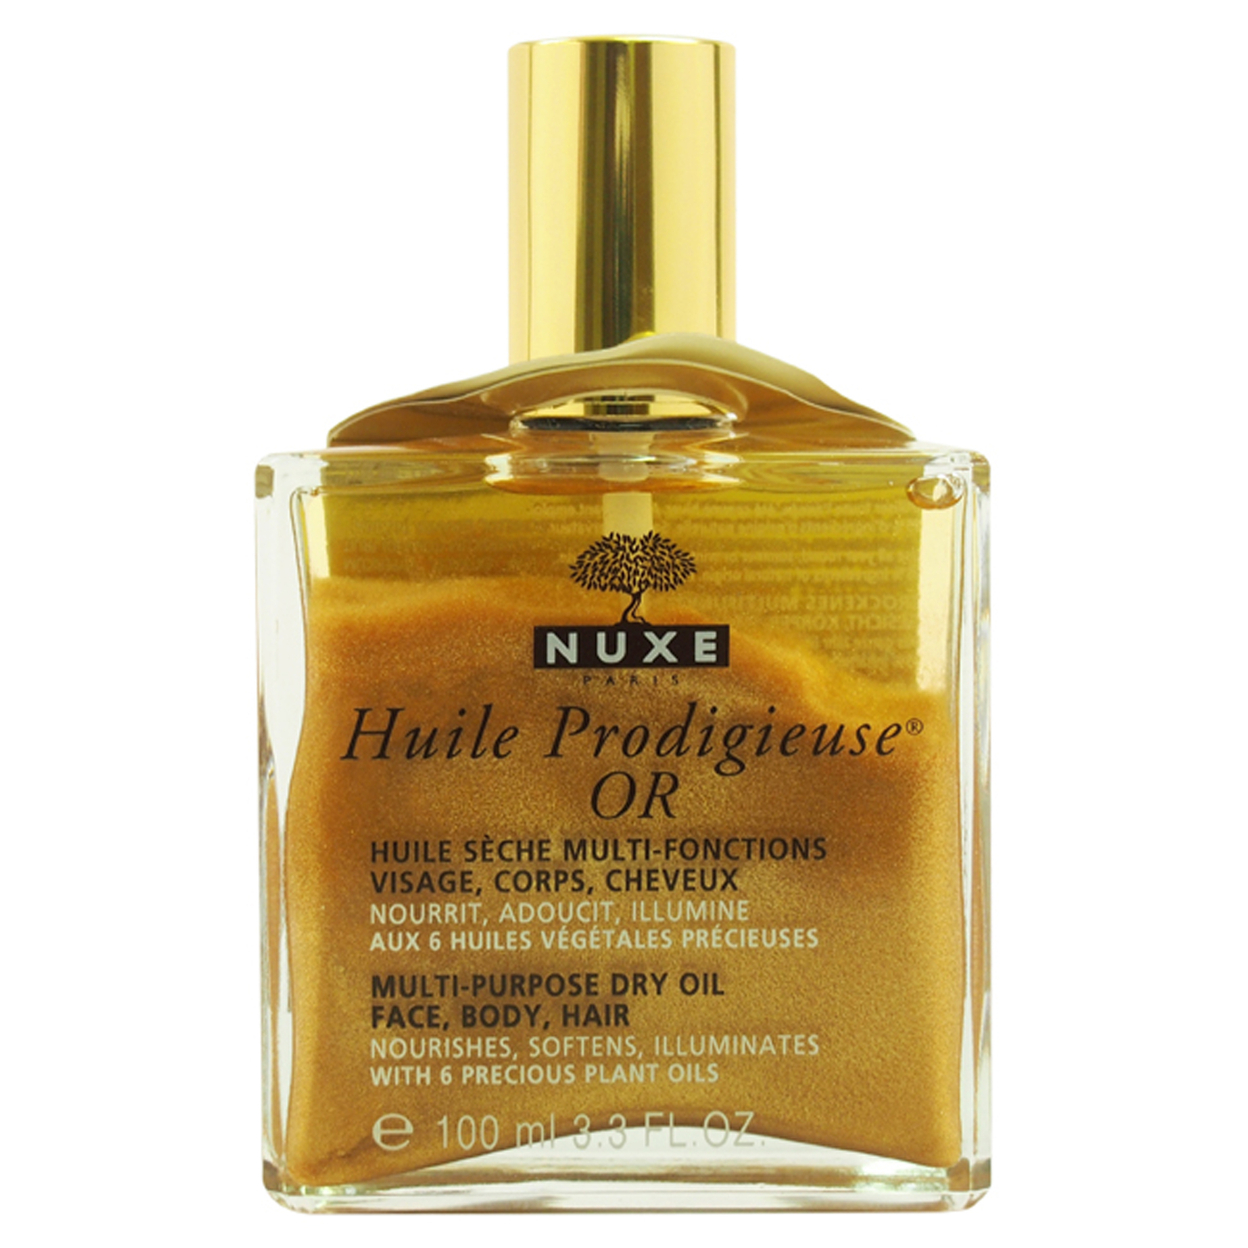 Nuxe Huile Prodigieuse OR Multi-Purpose Dry Oil - Golden Shimmer Oil 3.3 Oz